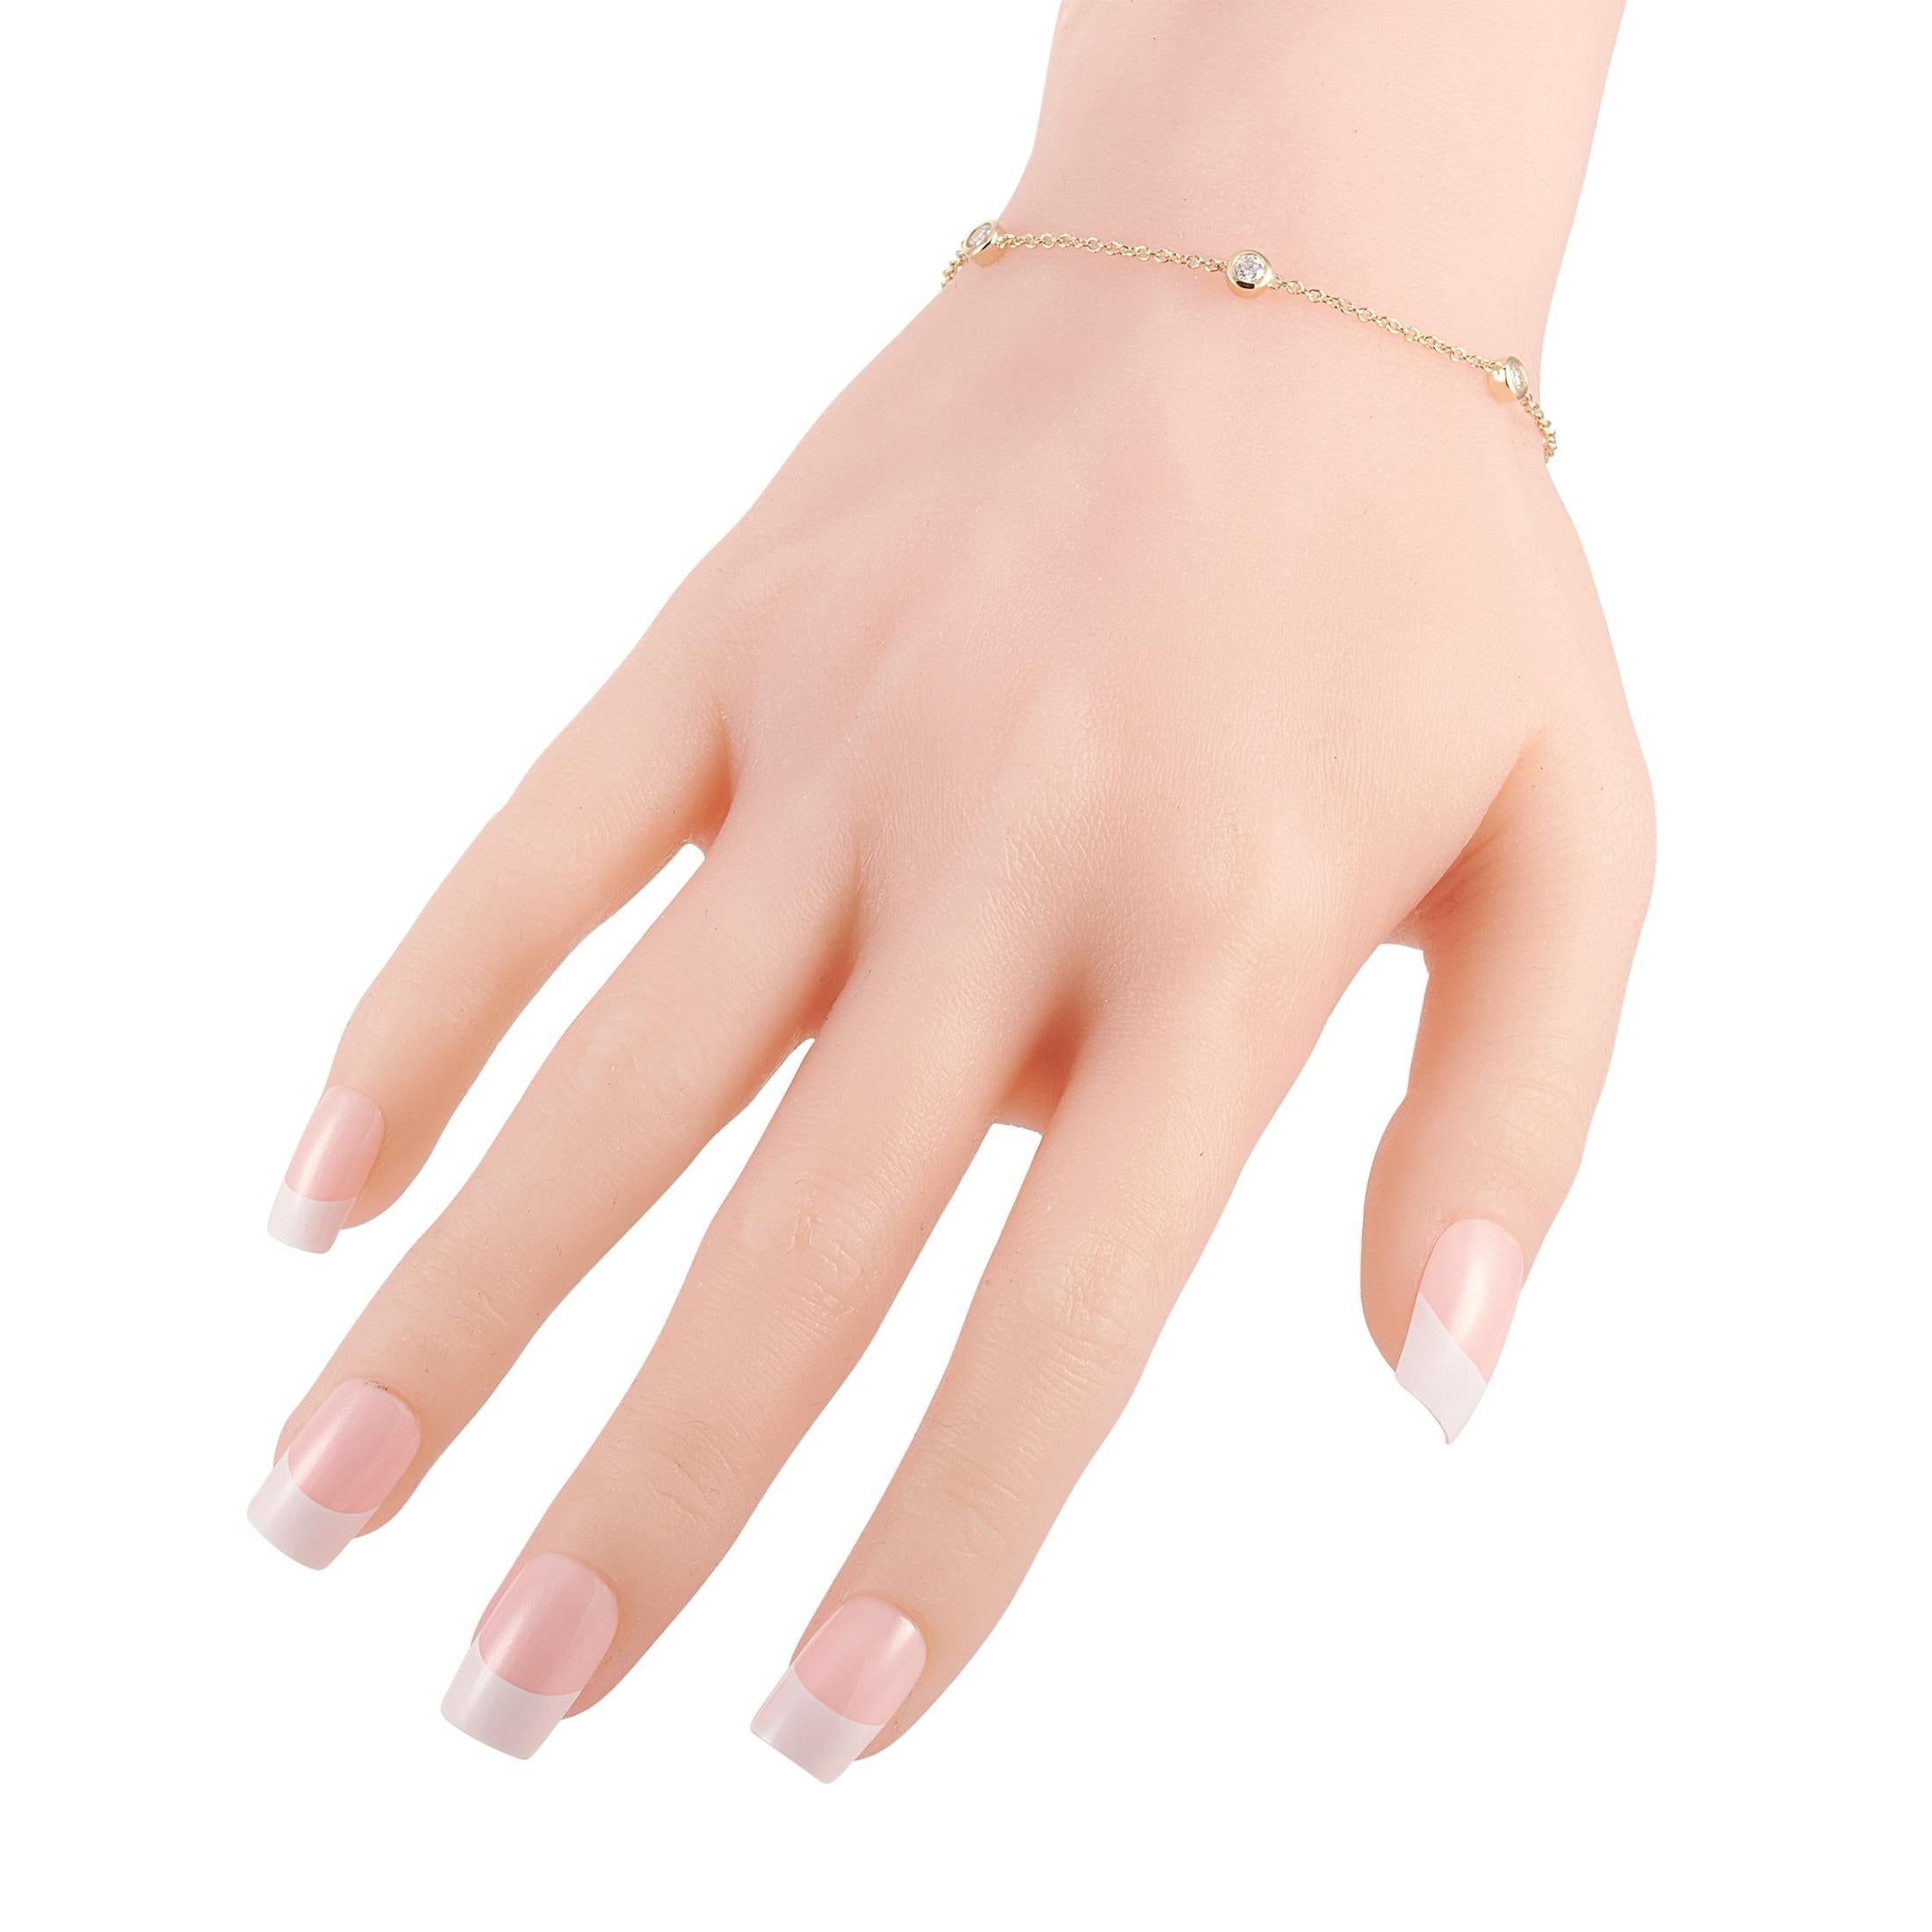 Ce bracelet LB Exclusive est fabriqué en or jaune 14 carats et pèse 2,4 grammes. Il mesure 6,50 pouces de long. Le bracelet est serti de diamants totalisant 0.50 carats.
 
 Proposé dans un état neuf, cet article est accompagné d'un coffret cadeau.
